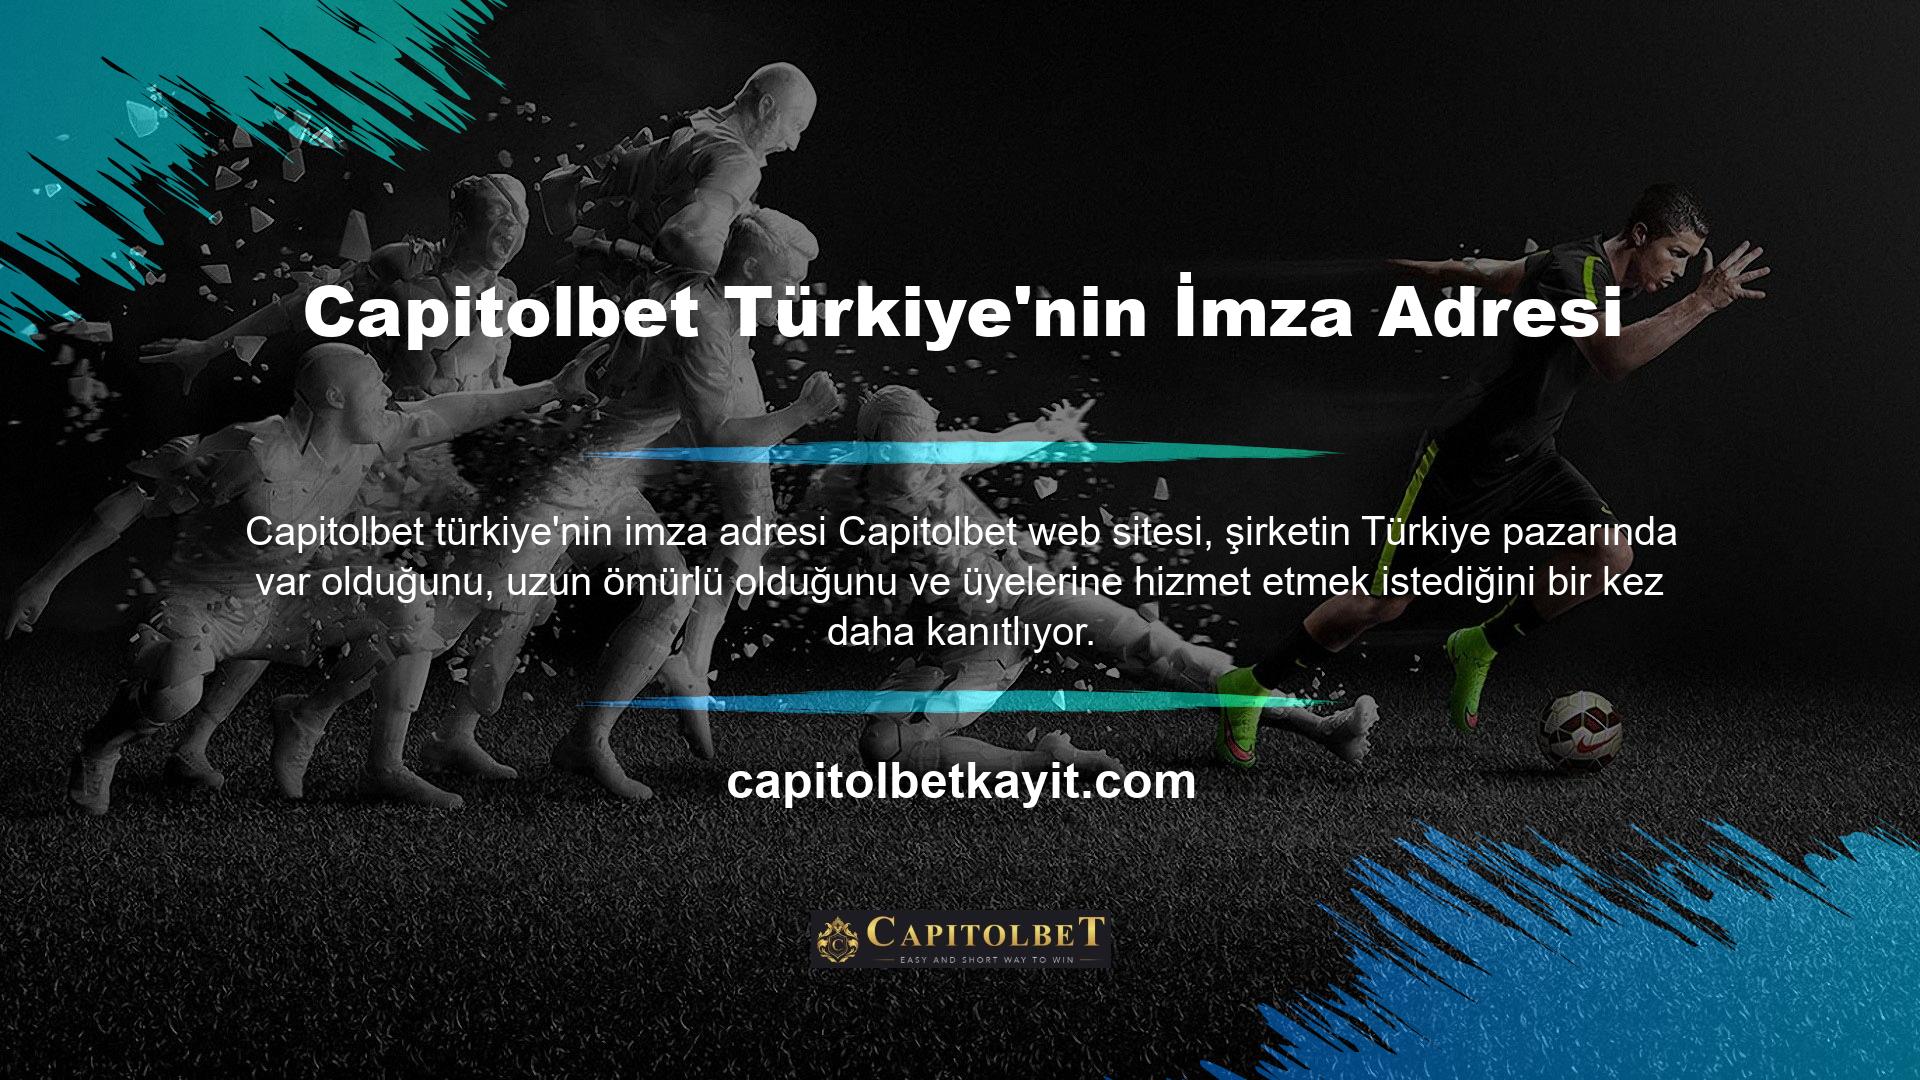 Capitolbet, hizmeti Türkçe bir giriş adresi ile başlatır